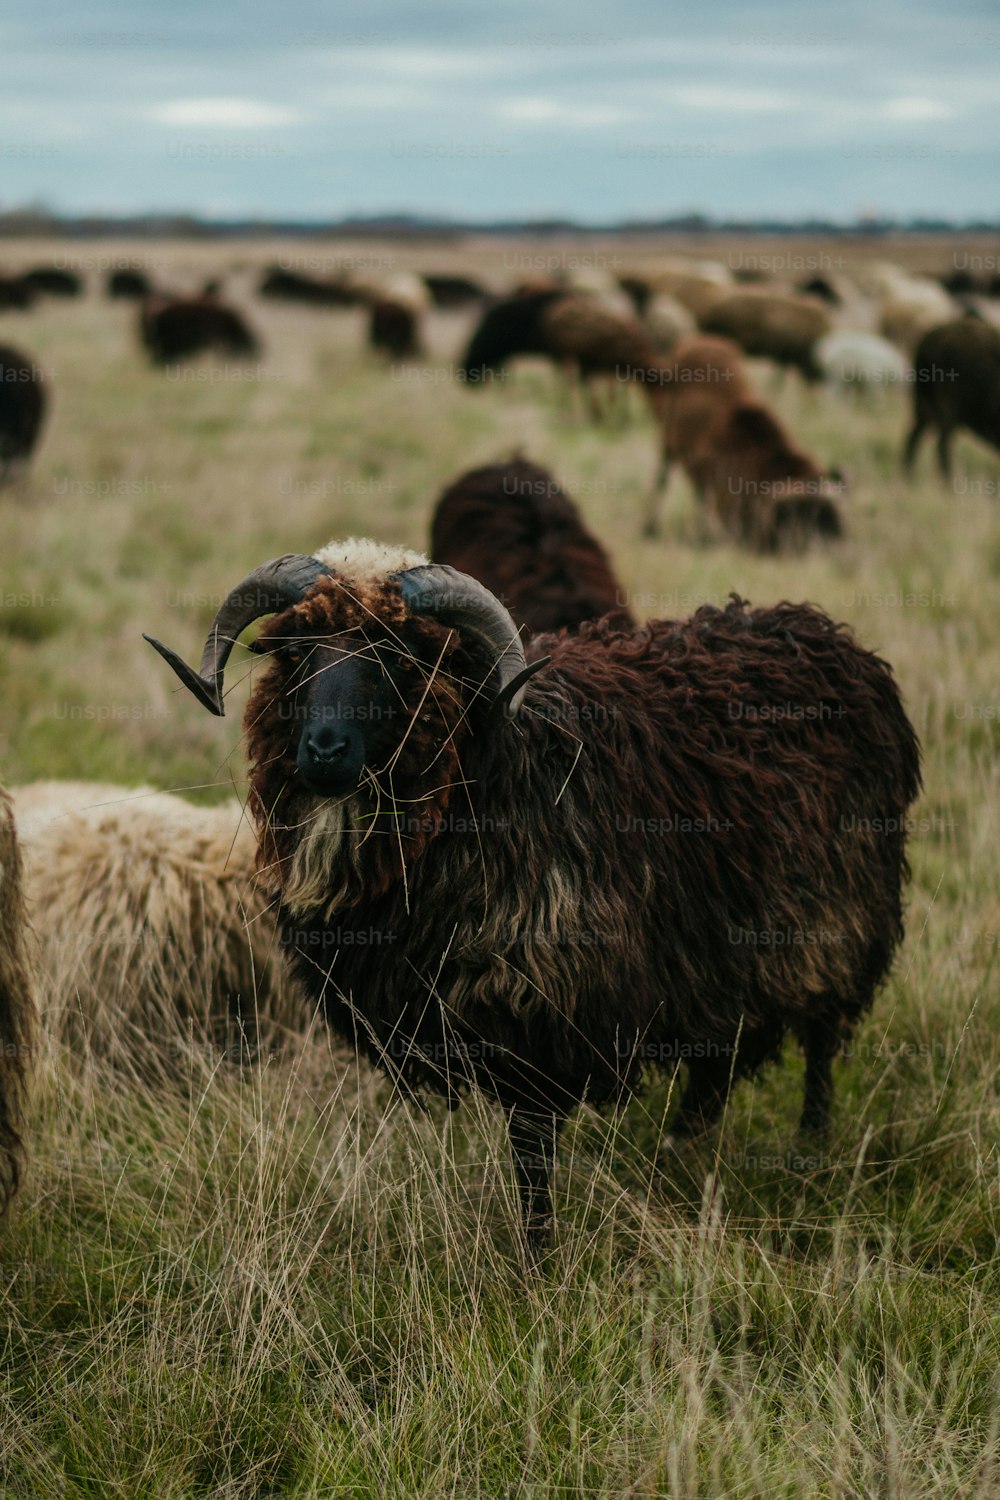 Un gregge di pecore al pascolo su un rigoglioso campo verde